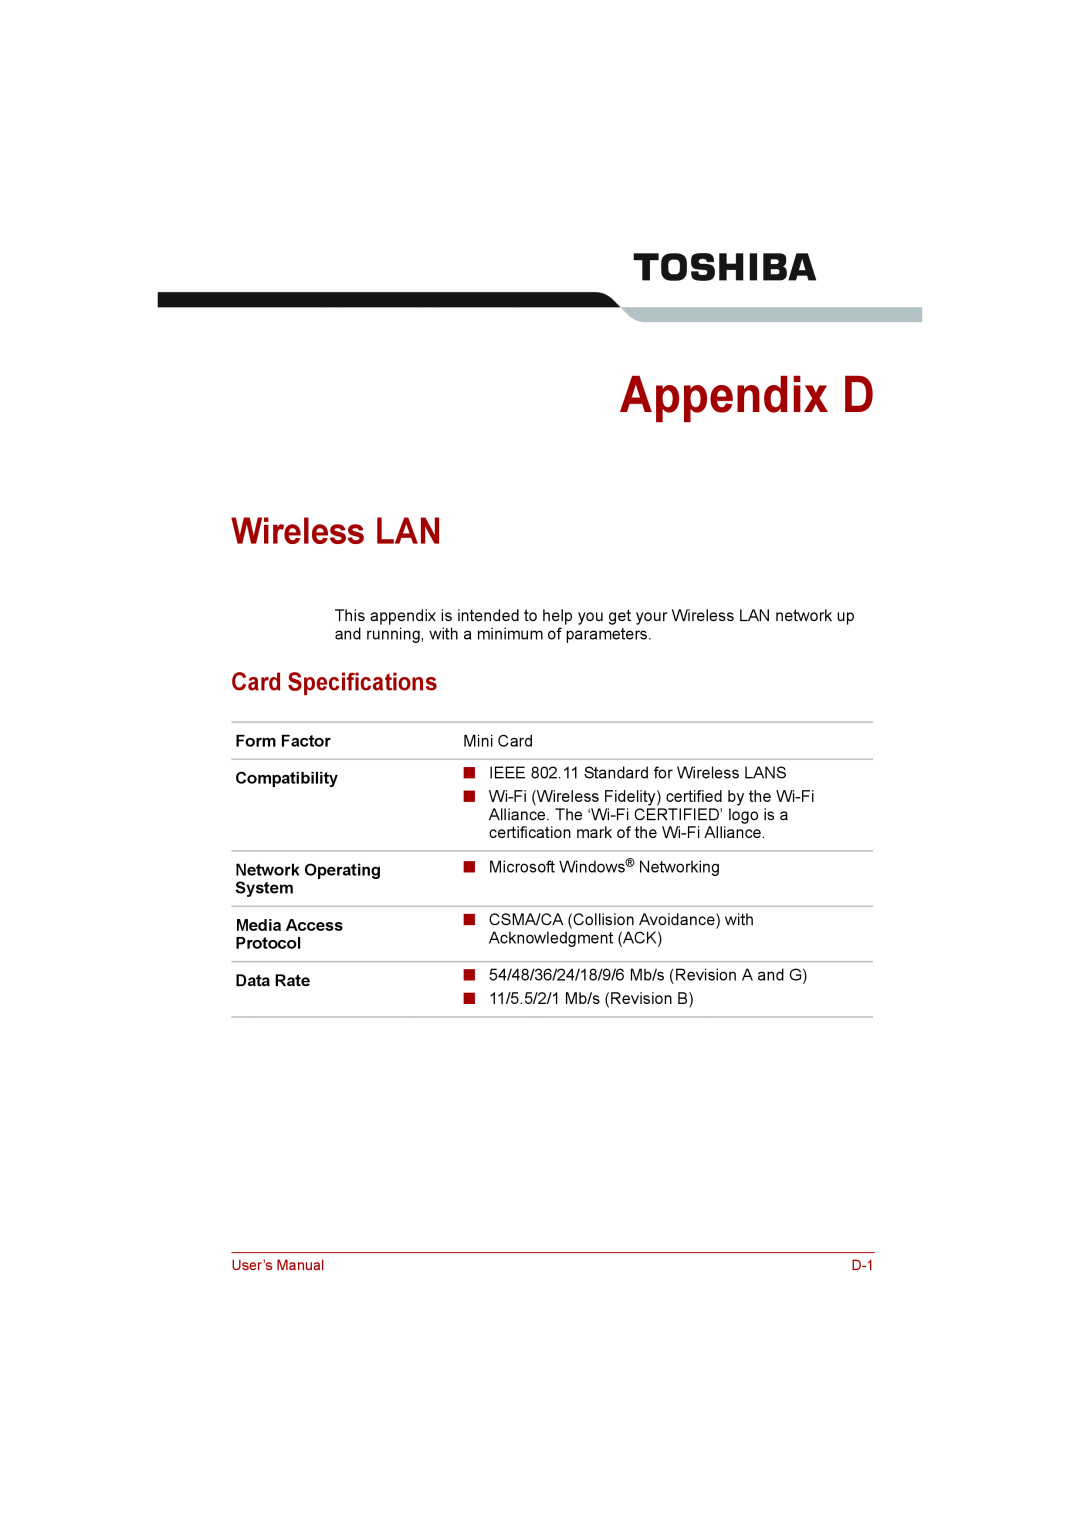 Toshiba toshiba satellite l550/ satellite pro l550/ satellite l550d/ satellite pro l550d series Appendix D, Wireless LAN 